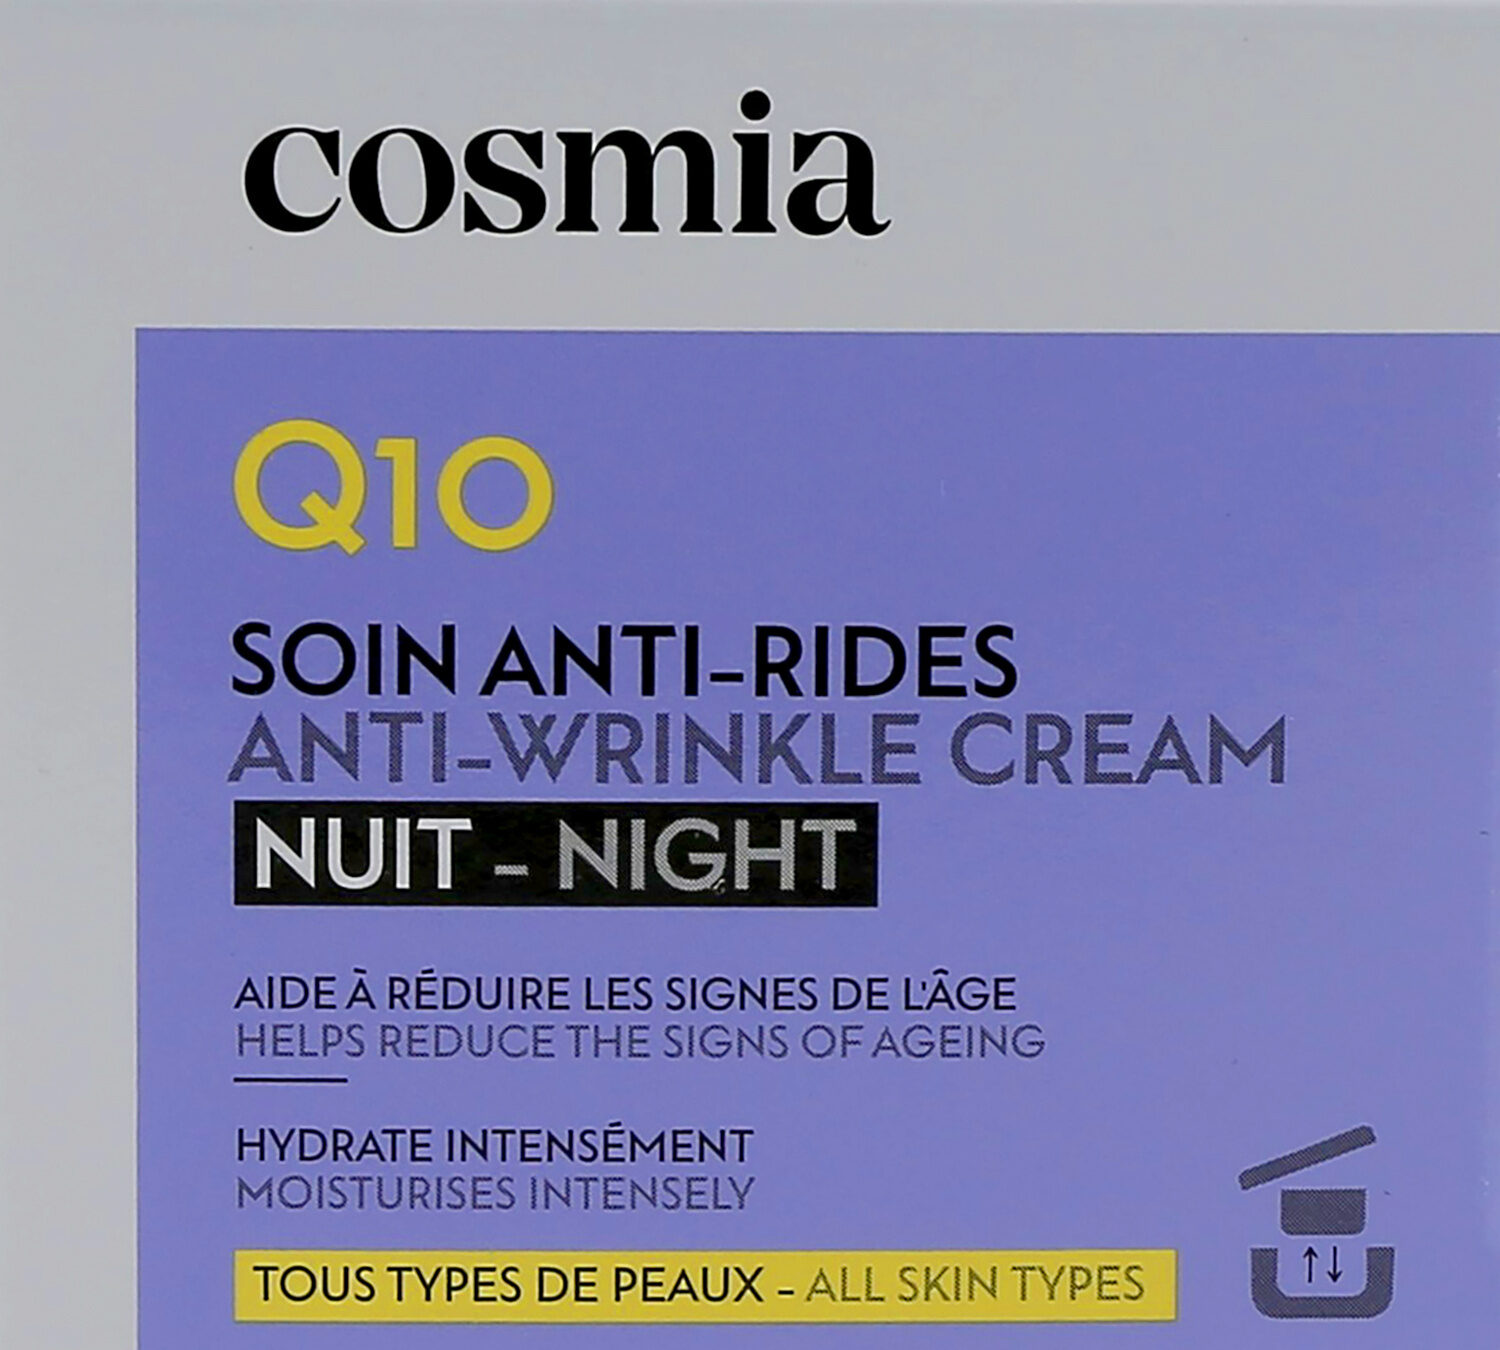 Cosmia creme nuit - anti ride - q10 50ml - Produto - fr